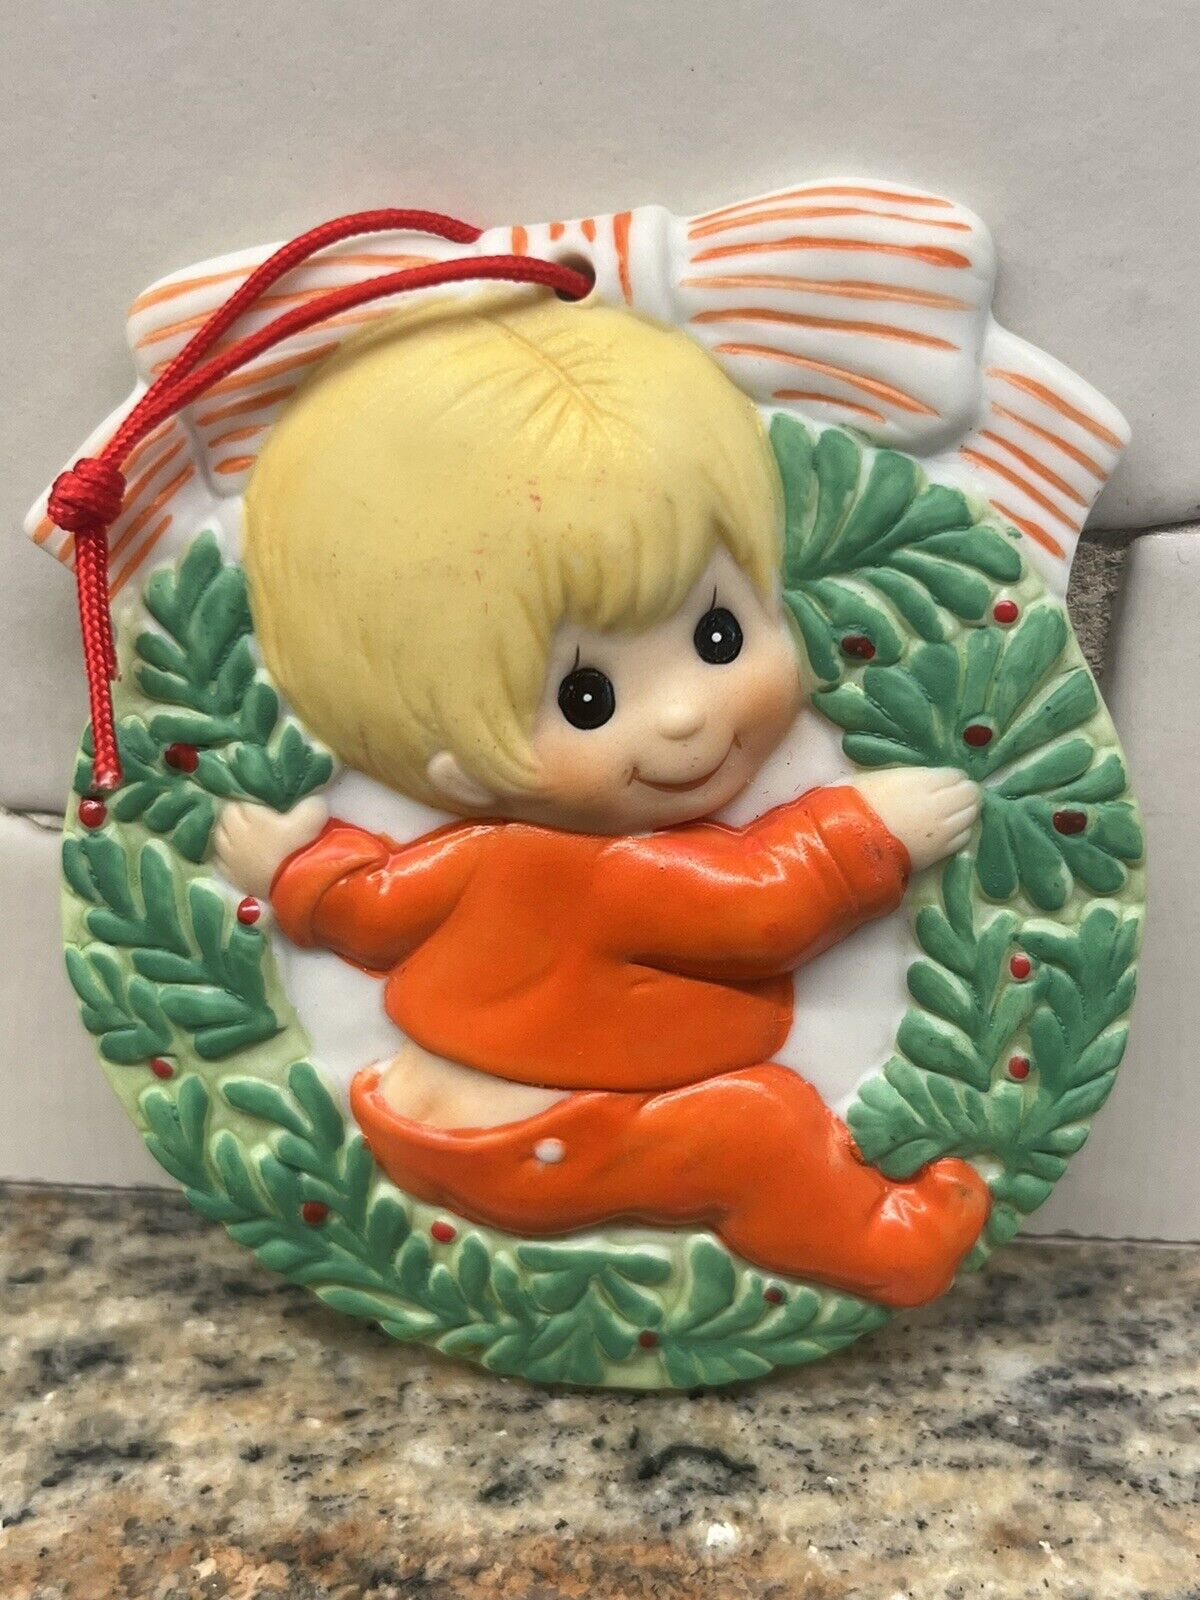 Marilyn Conklin 1984 Christmas Joy Ornament R. Dakin & Co. young boy wreath